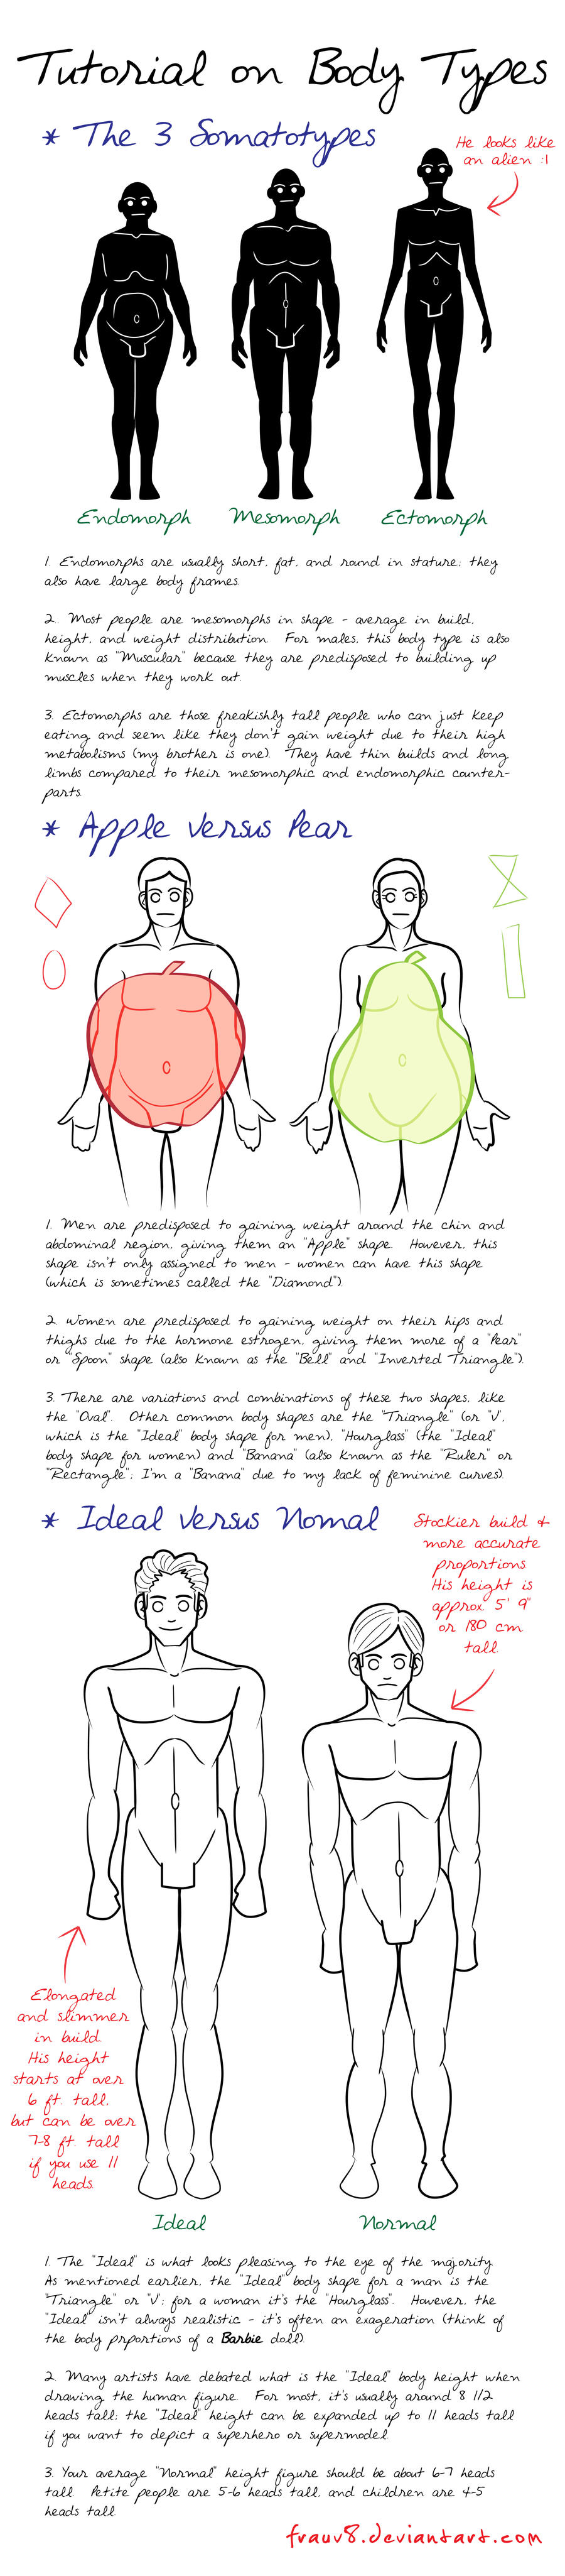 Body Types Tutorial by FrauV8 on DeviantArt